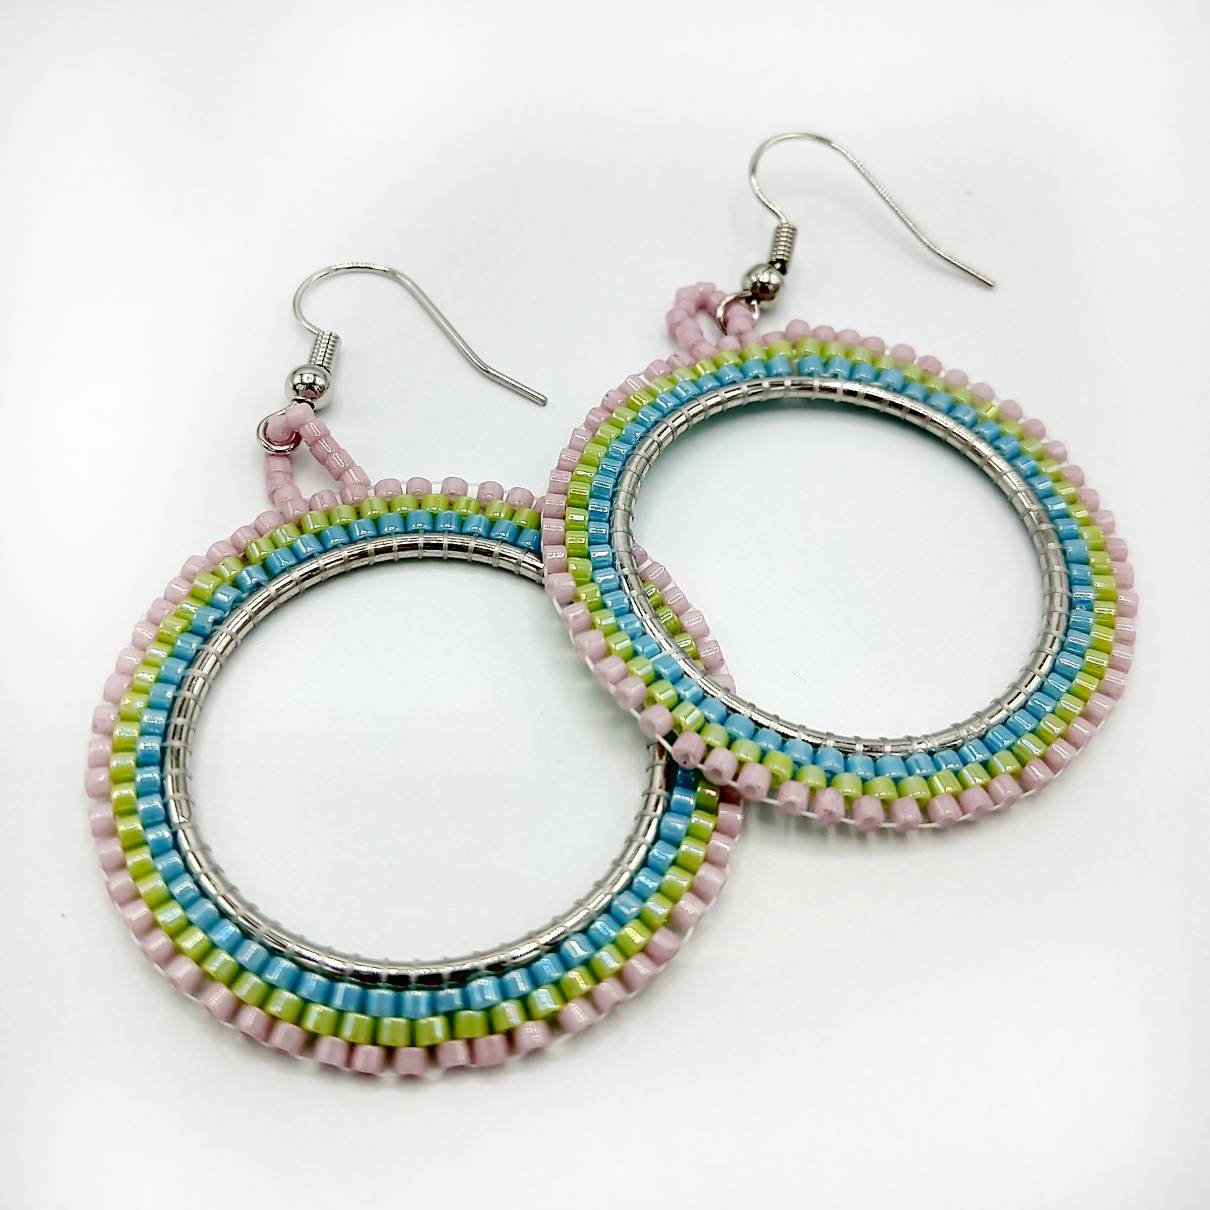 Beaded Hoop Earrings Spring Colors Neon Blue Chartreuse Rose Pink Statement Earrings Beaded Earrings Beaded Jewelry Boho Earrings Aesthetic